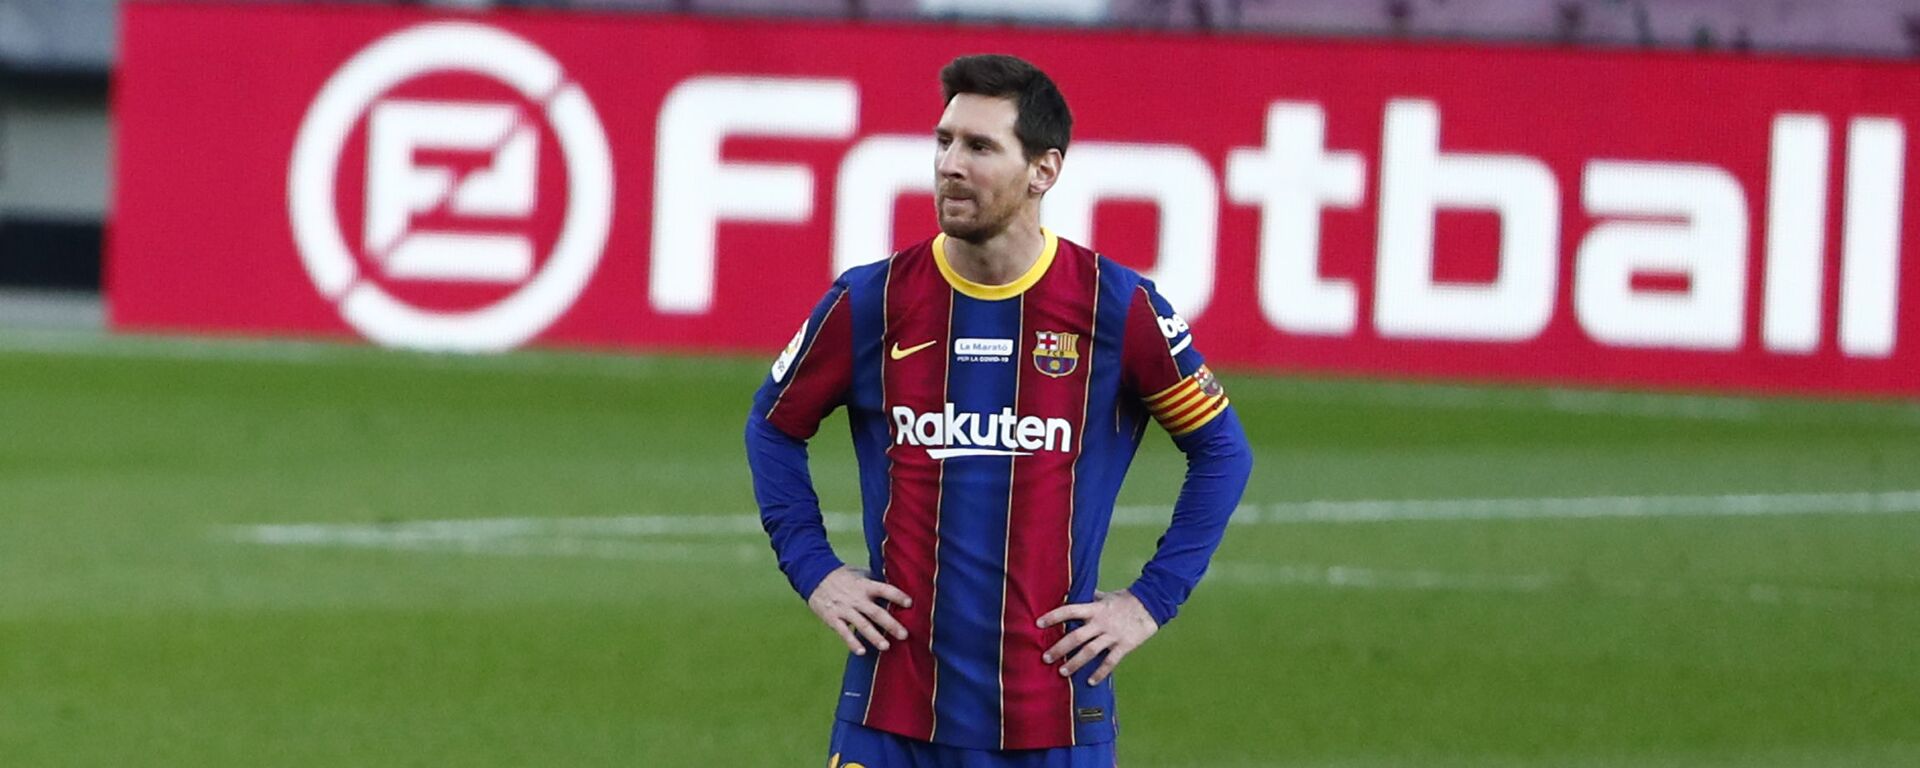 Leo Messi, futbolista argentino - اسپوتنیک افغانستان  , 1920, 25.03.2021